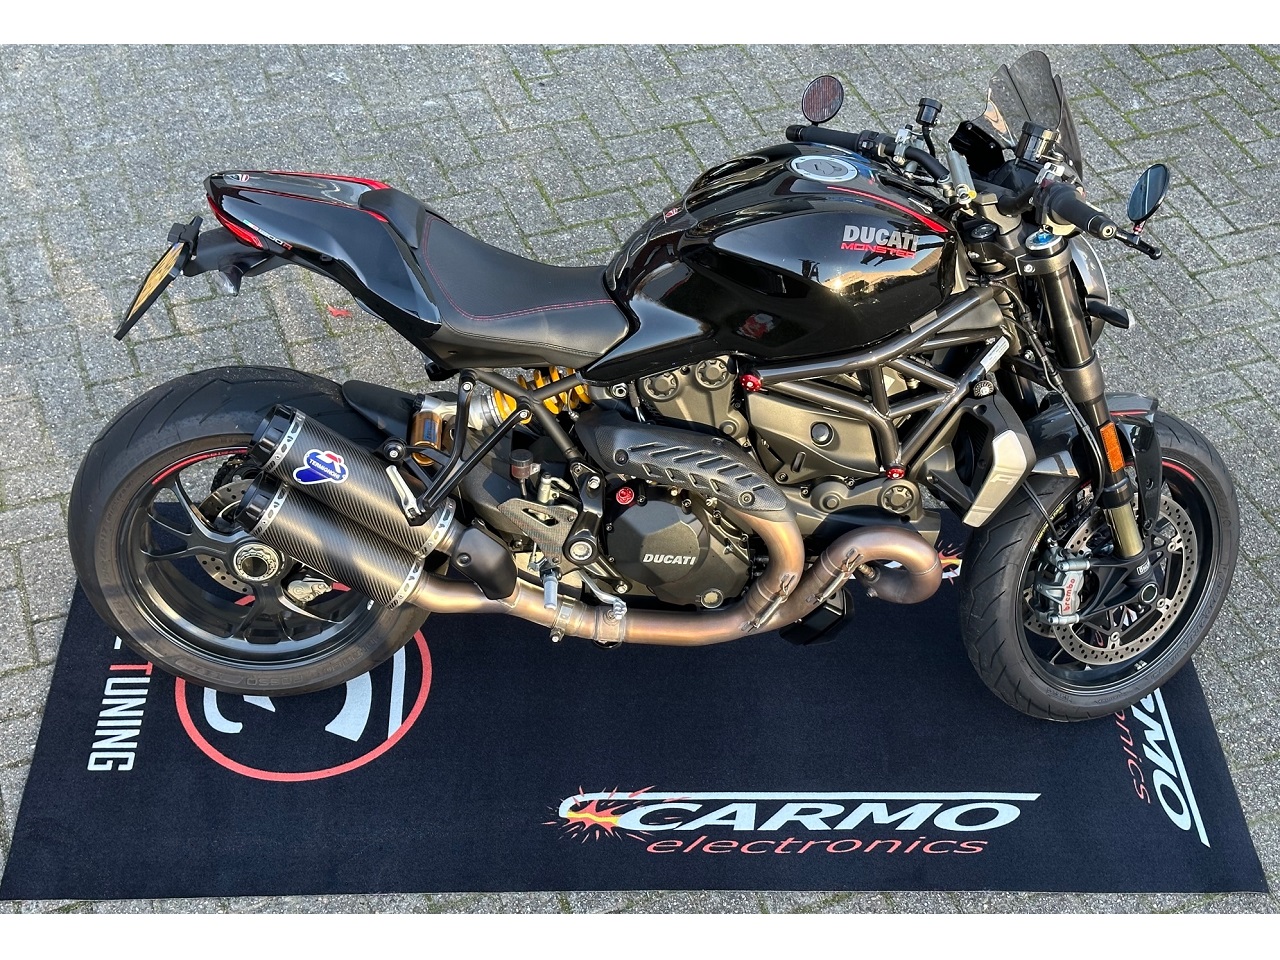 CARMO Officina pitlane moto Garage Tappetino in moquette - Clicca l'immagine per chiudere